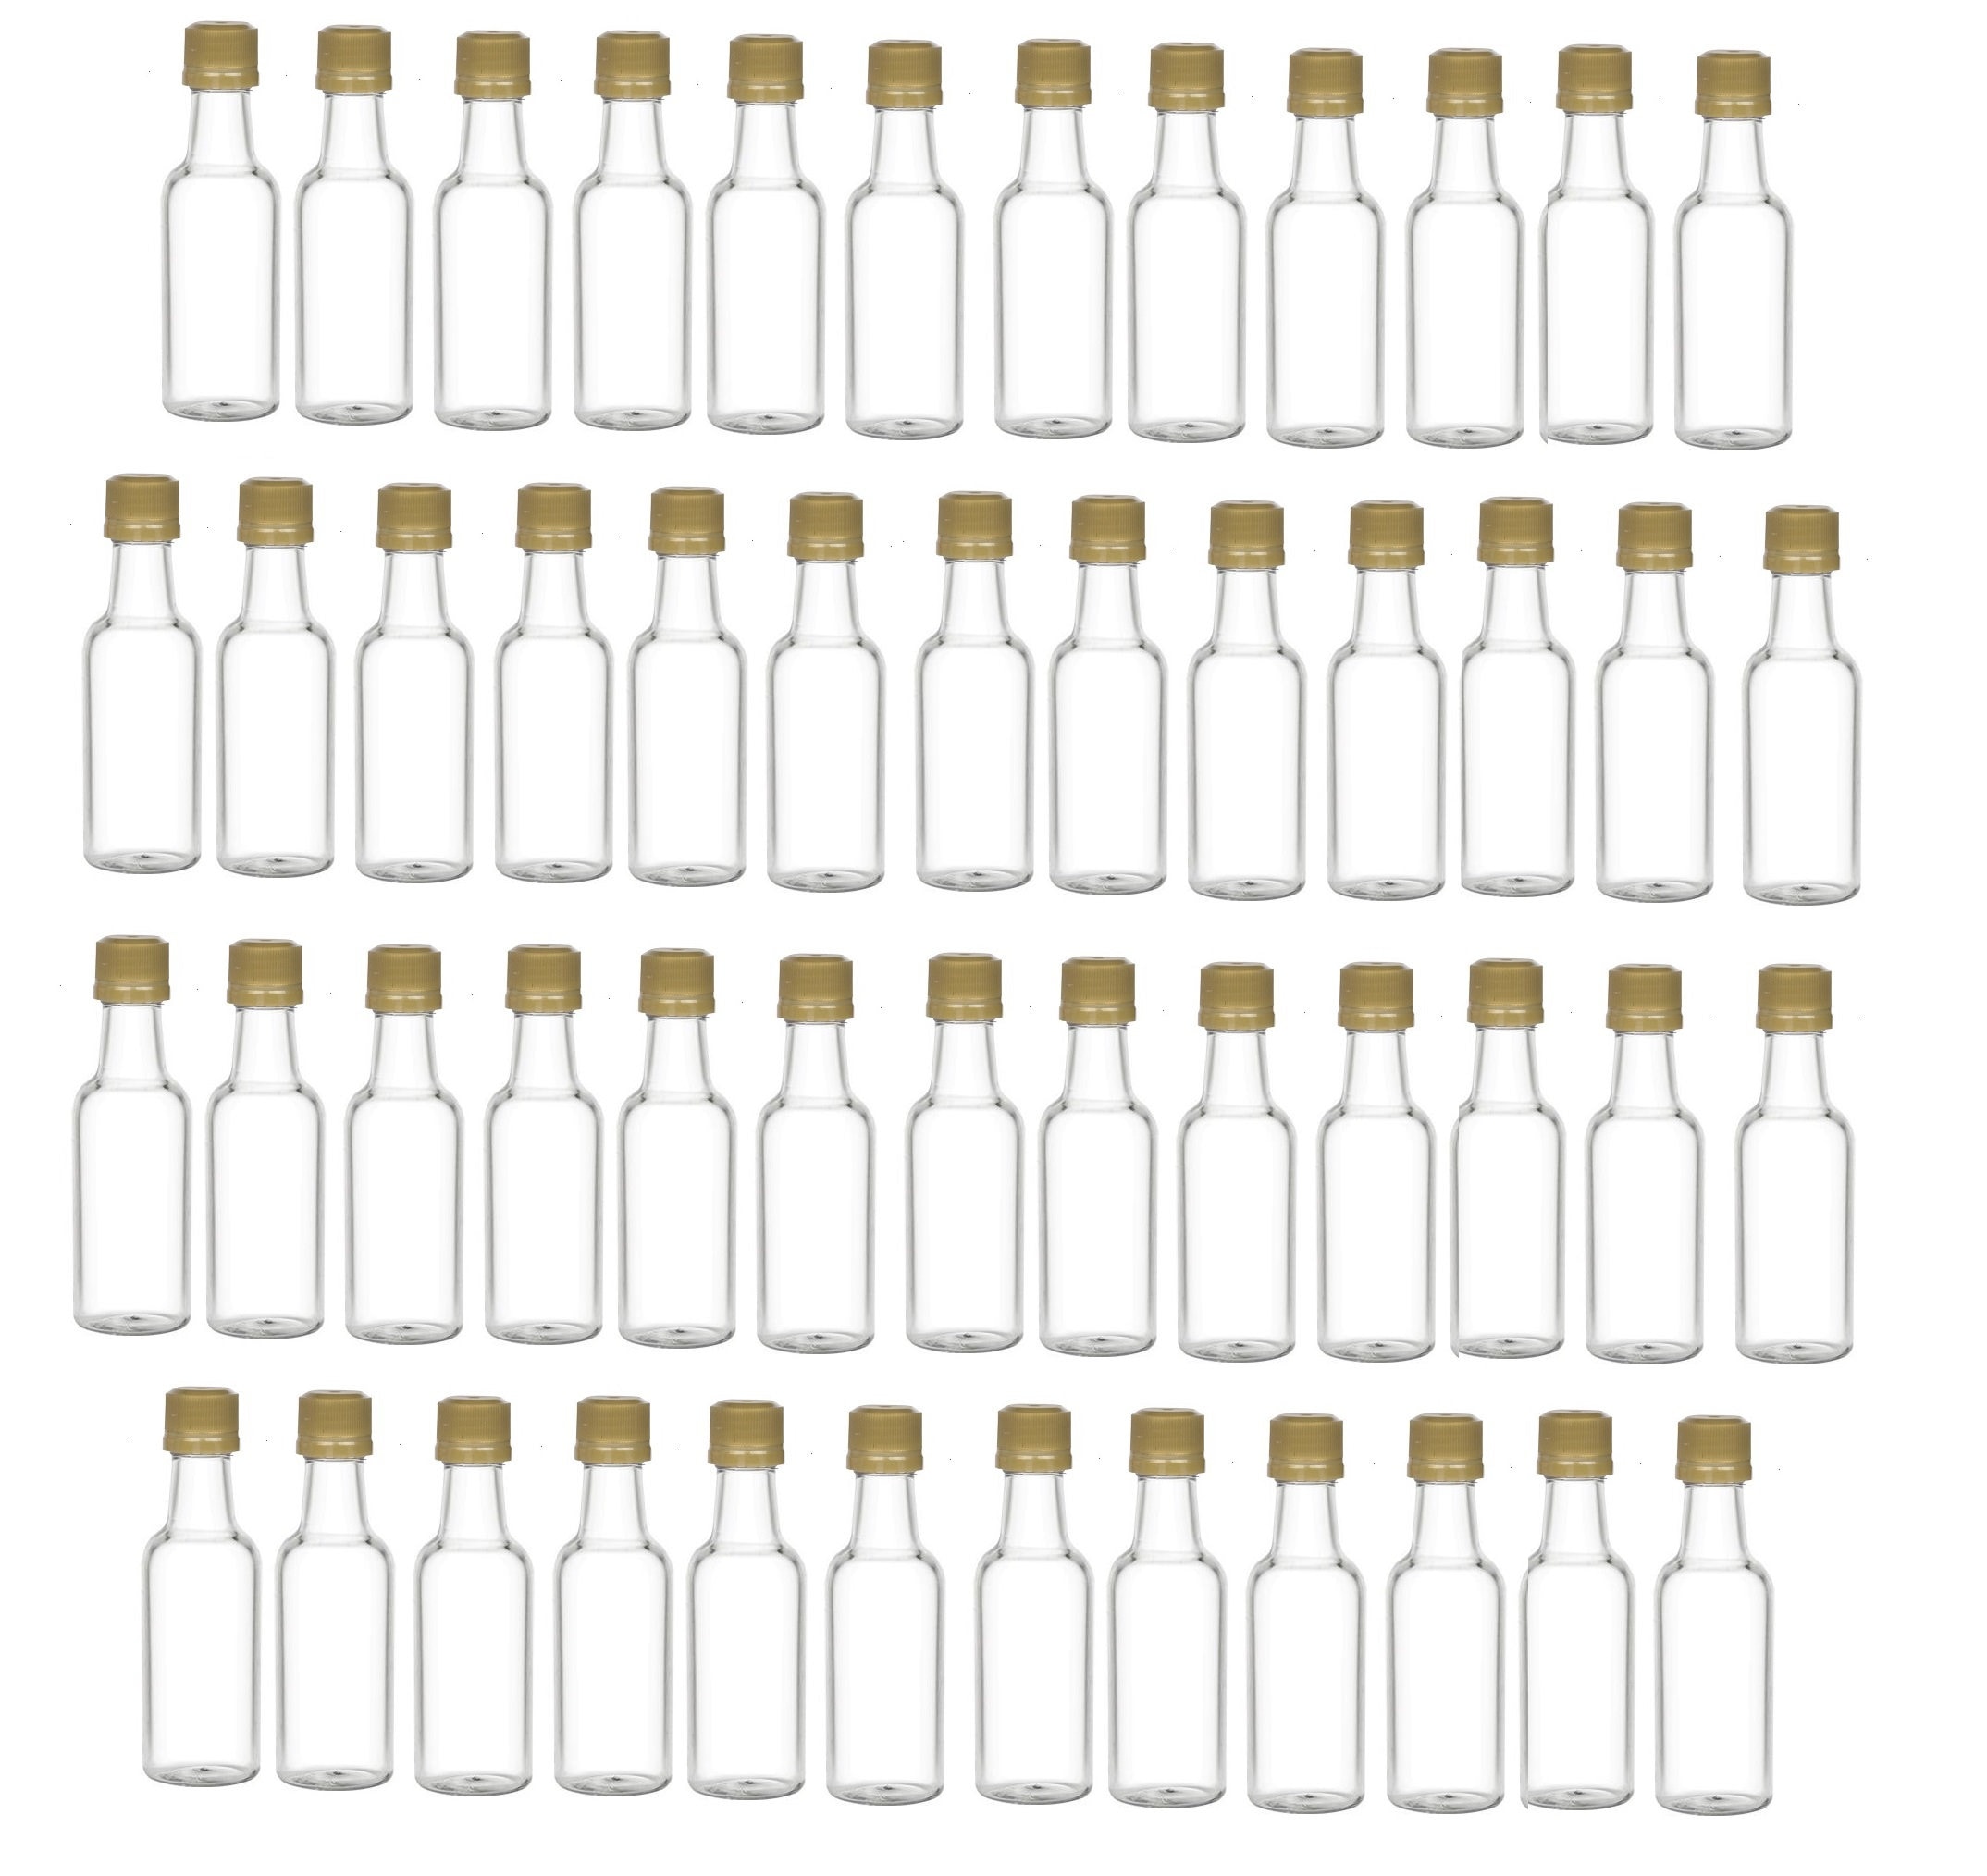  YZXODN Paquete de 50 mini botellas de licor de 1.8